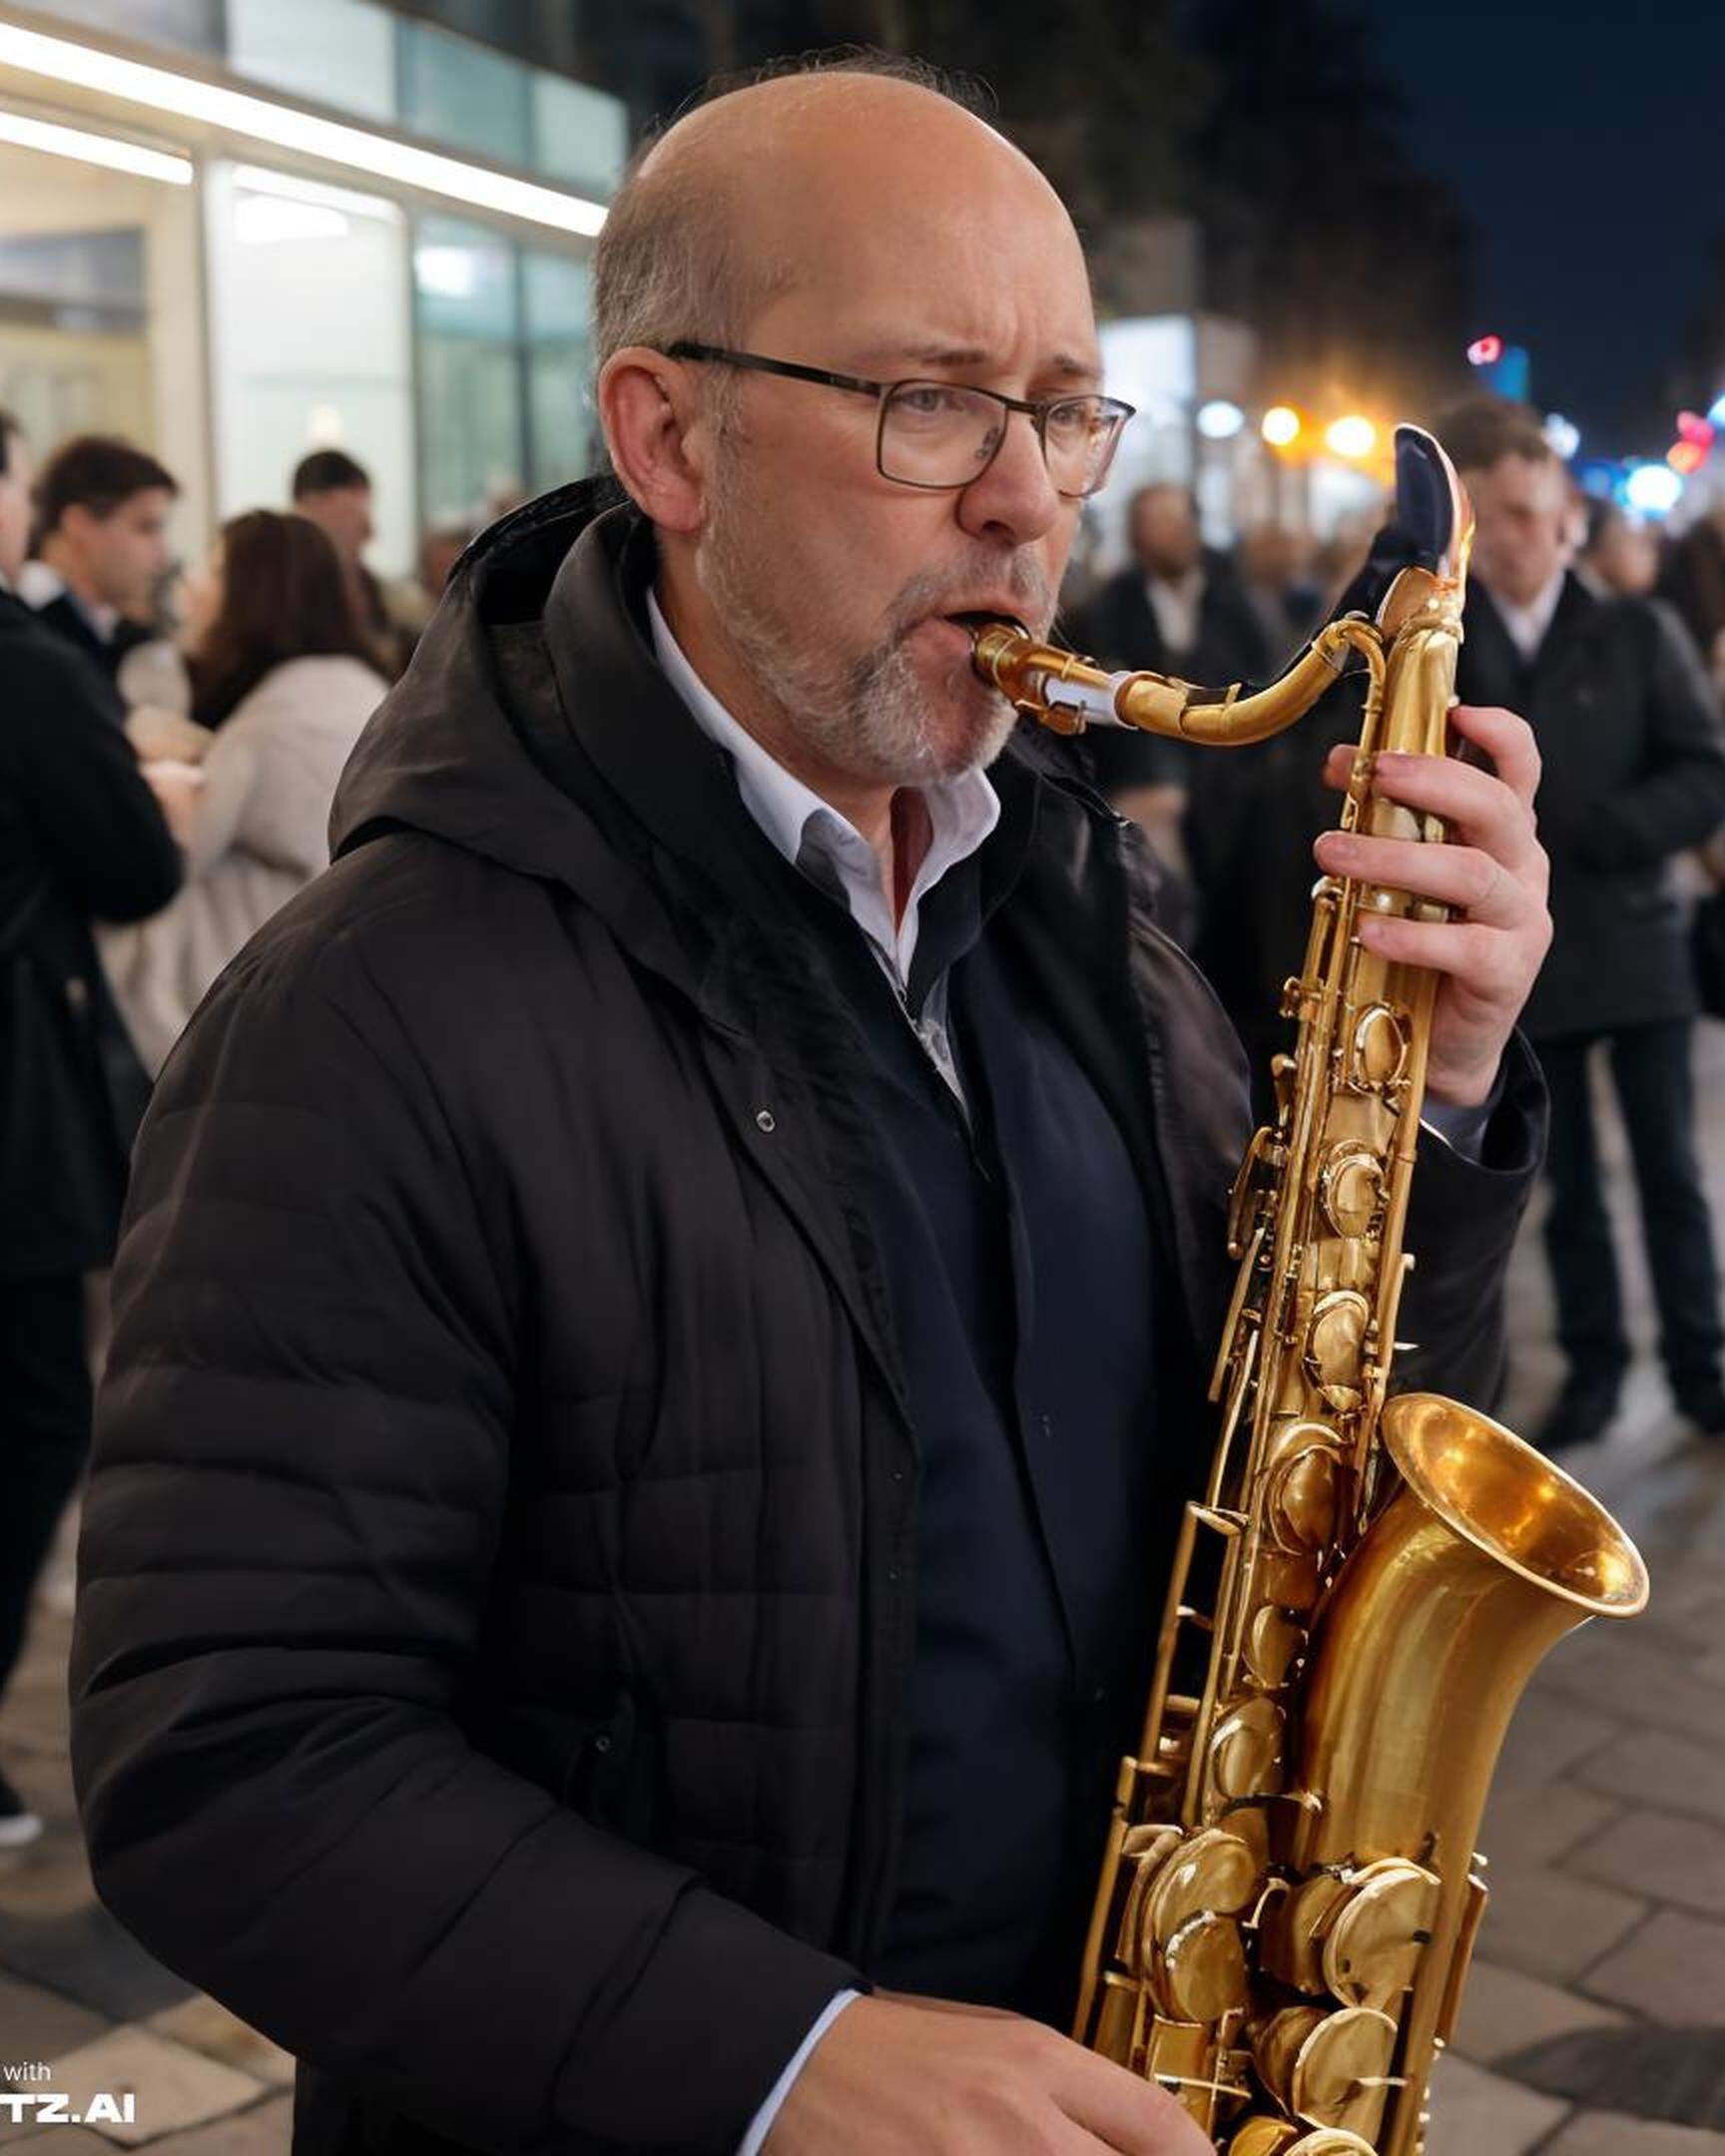 Dieses Foto zeigt Marco Barnig beim Spielen eines Saxophons. Er hat das Bild über LetzAI erstellen lassent. Es ist ein Fake.